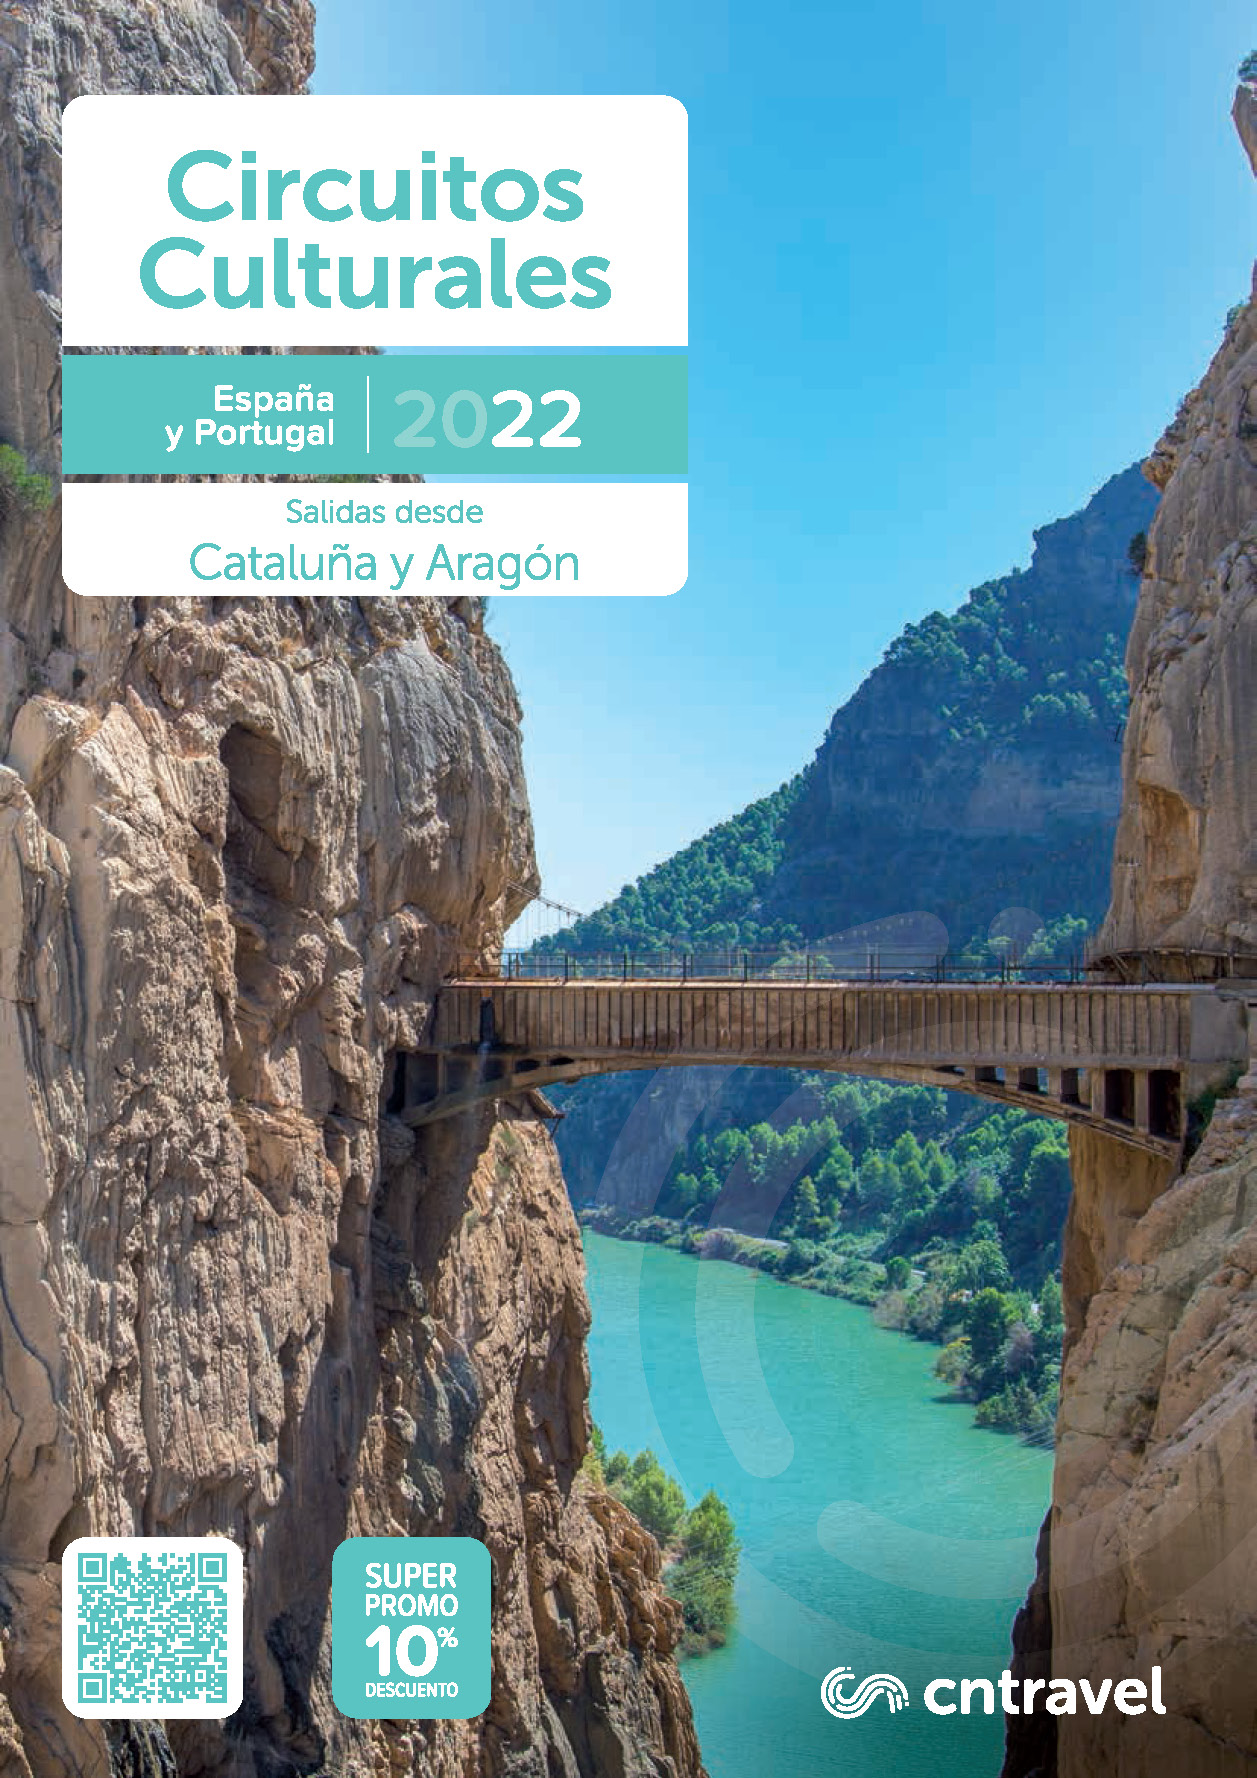 Catalogo CN Travel Circuitos Culturales 2022 Espana y Portugal salidas Catalunya y Aragon